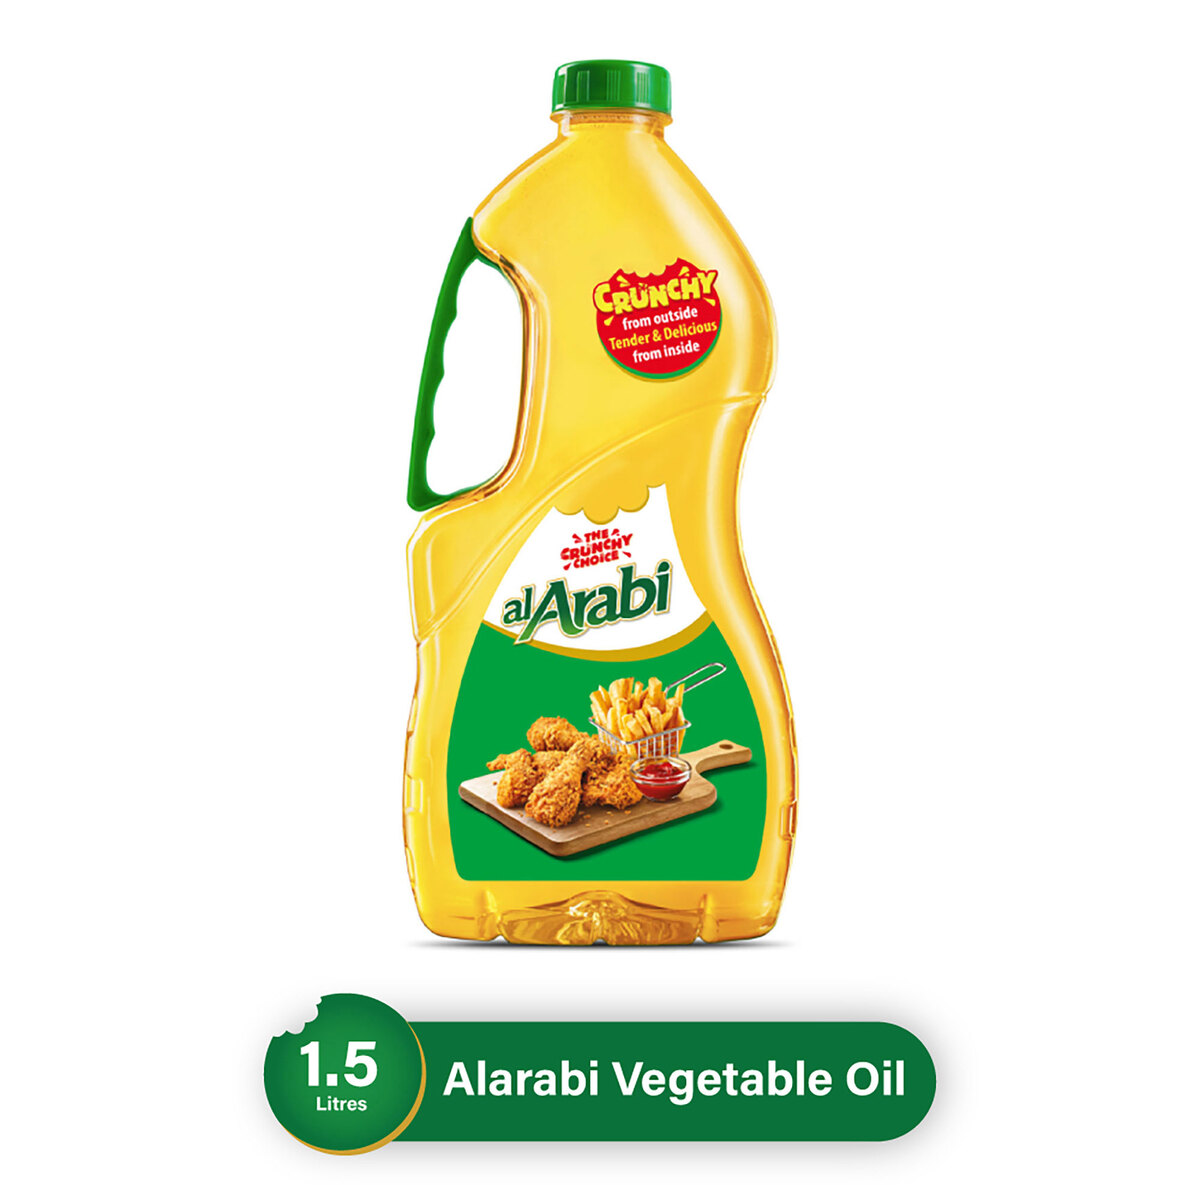 اشتري قم بشراء العربي زيت نباتي صافي ١.٥ لتر Online at Best Price من الموقع - من لولو هايبر ماركت Vegetable Oil في السعودية